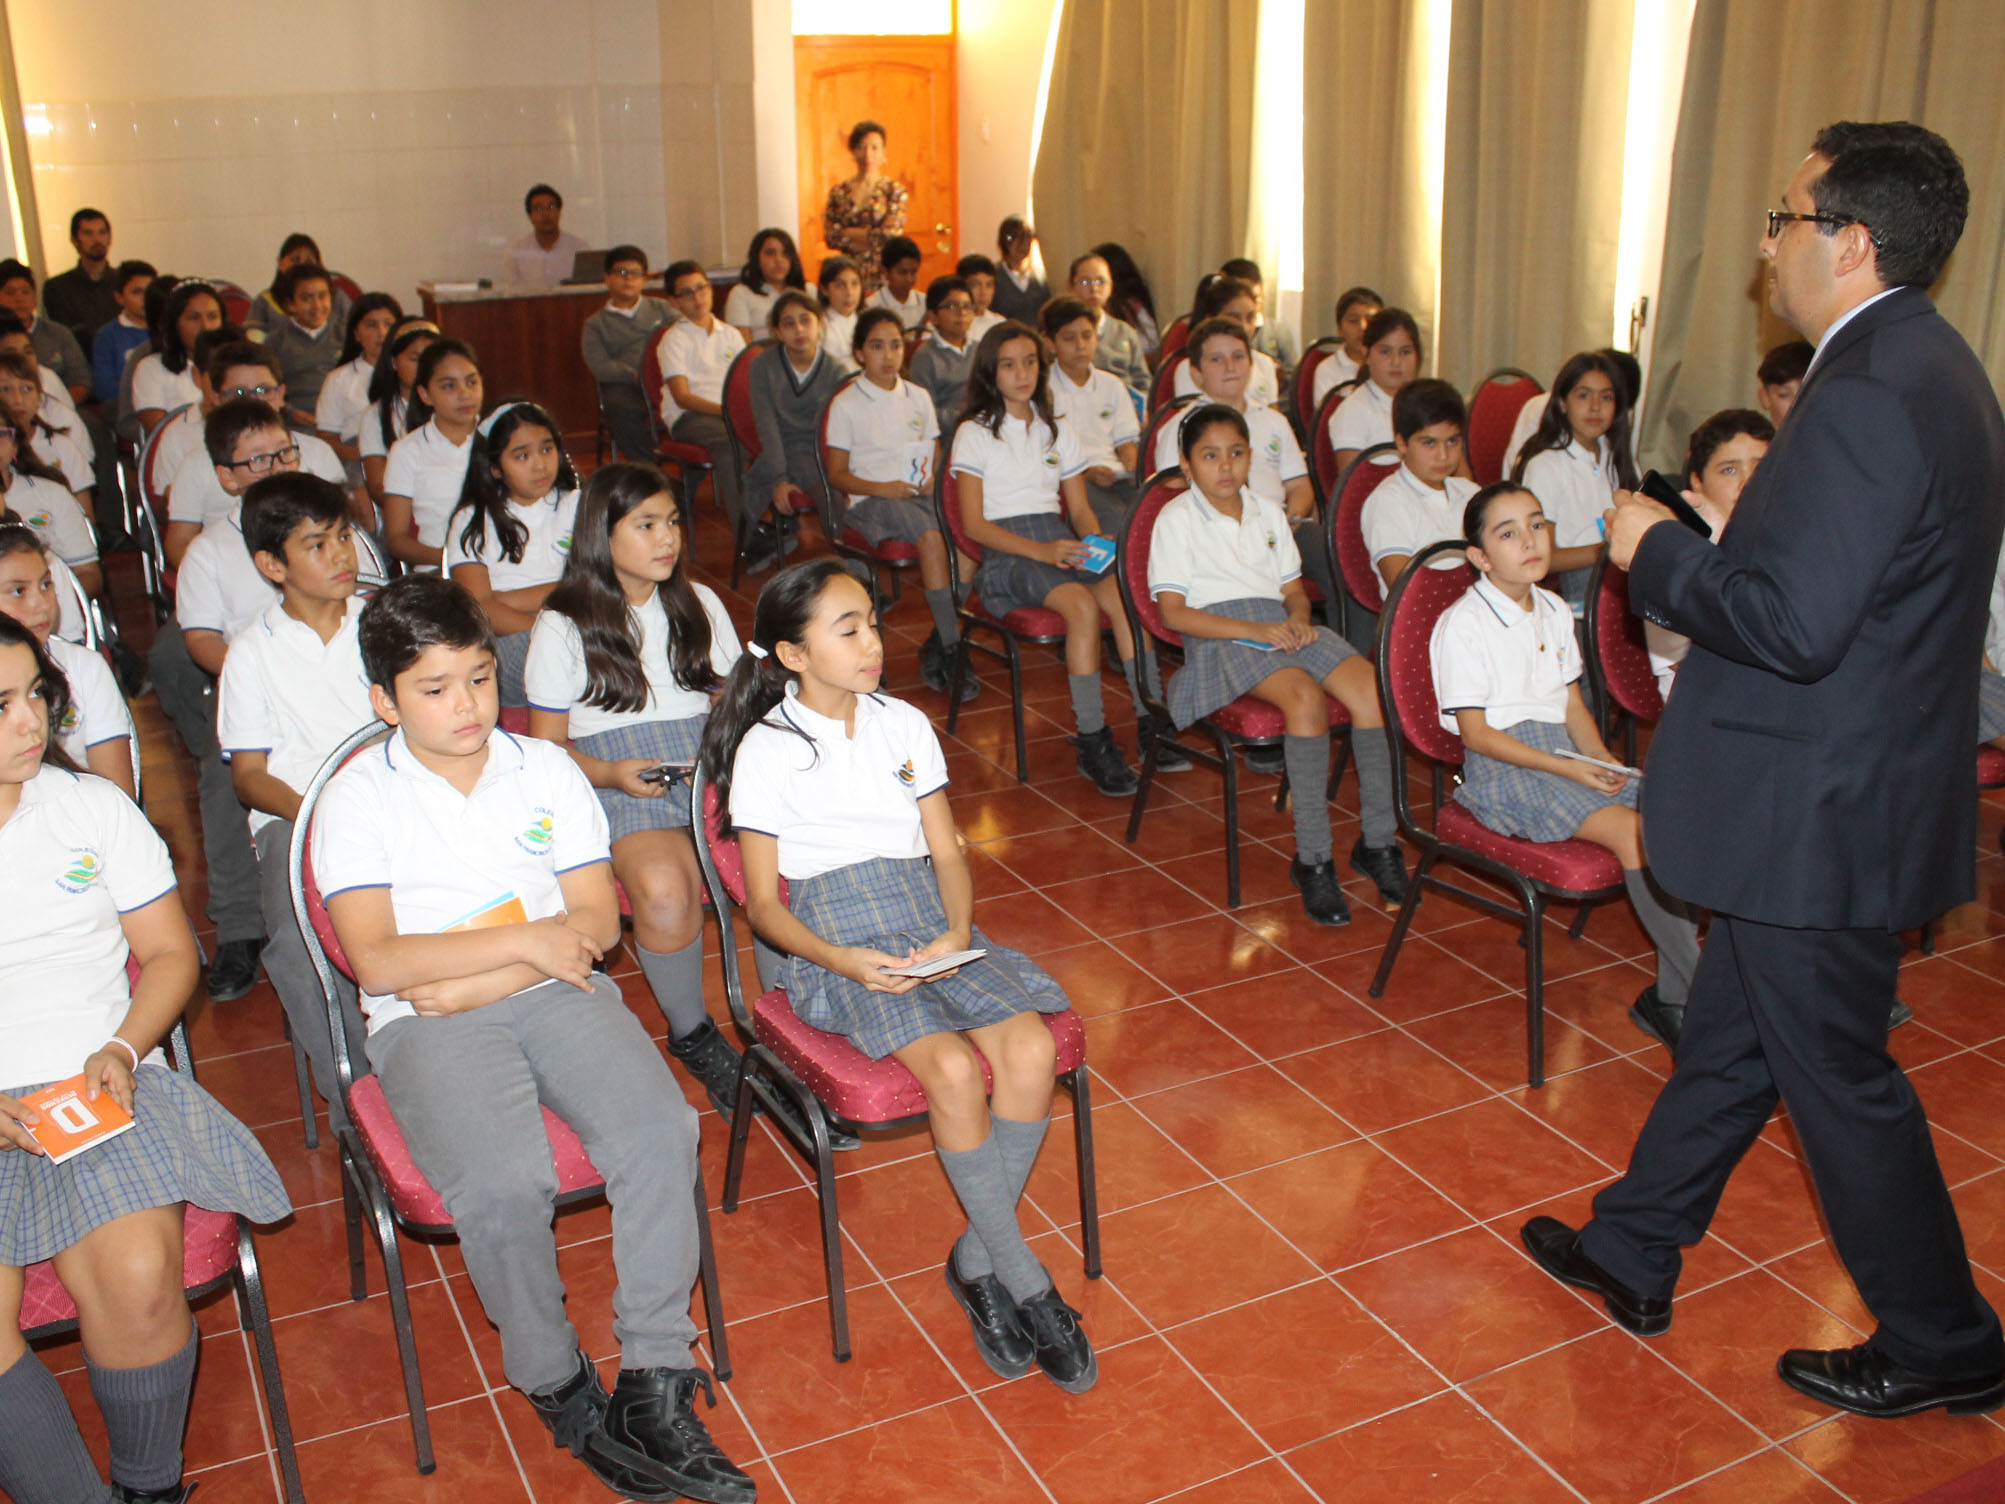 La charla ofrecida por el fiscal Gabriel Meza se extendió por casi dos horas por el interés de los alumnos asistentes.